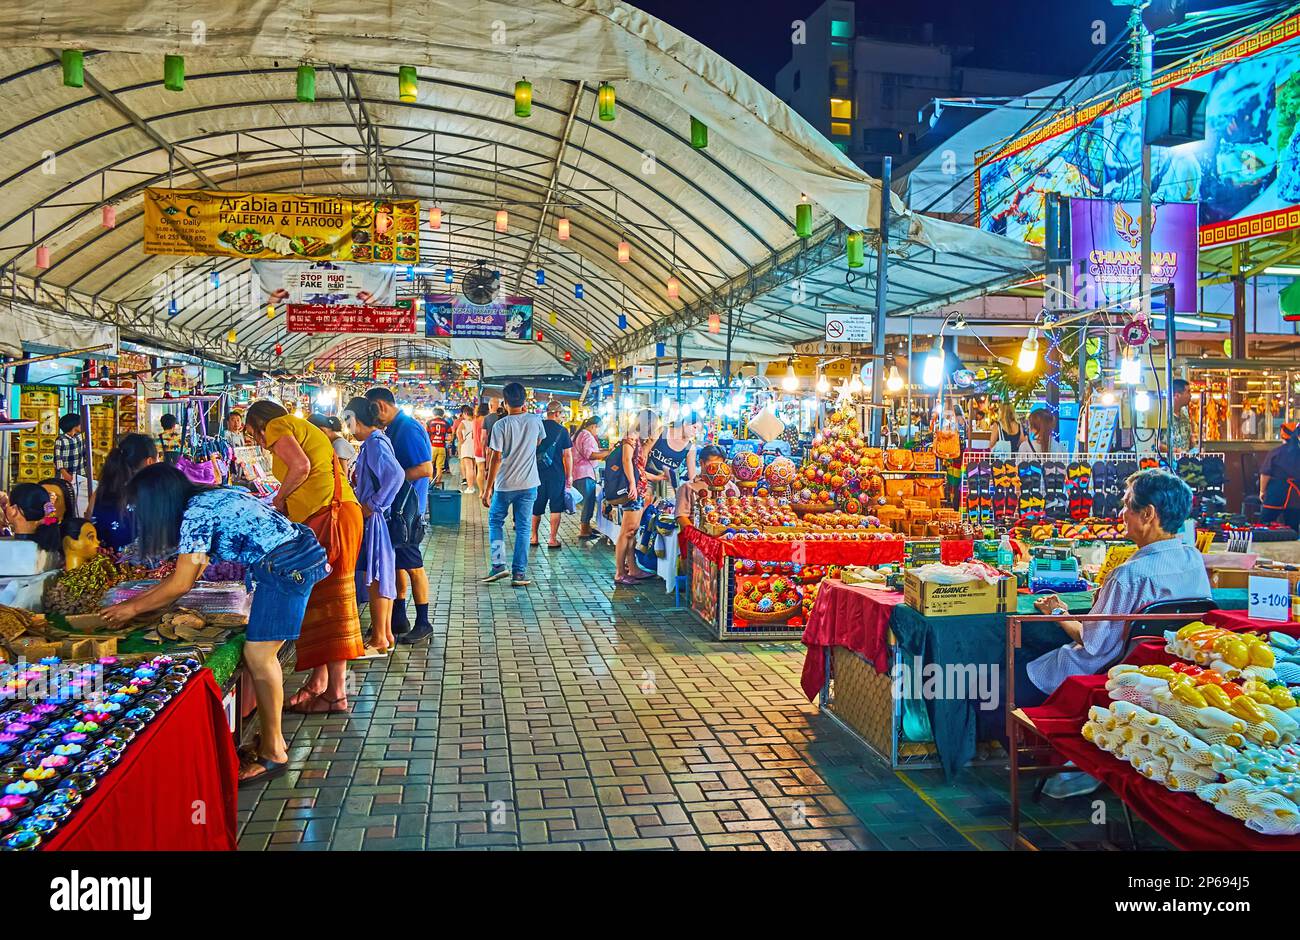 CHIANG MAI, THAILAND - 3. MAI 2019: Pavillon des Nachtmarktes von Anusarn, beliebt bei Touristen, auf der Suche nach Souvenirs, Kunsthandwerk, Kleidung, Accessoires Stockfoto